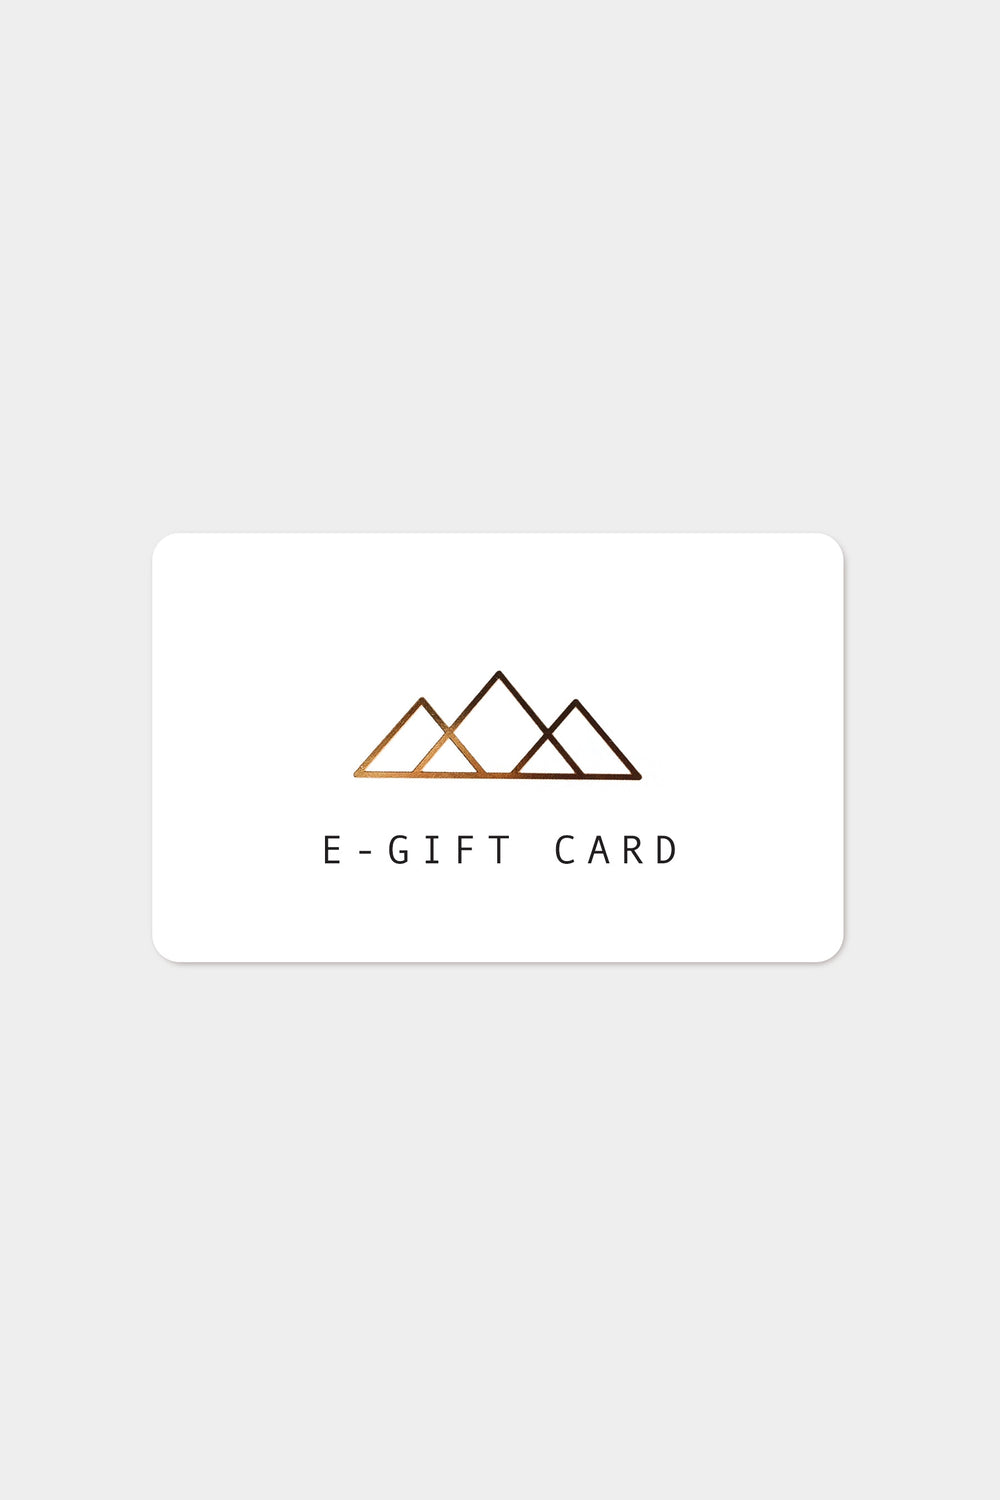 E-Gift Card (Prior Version)